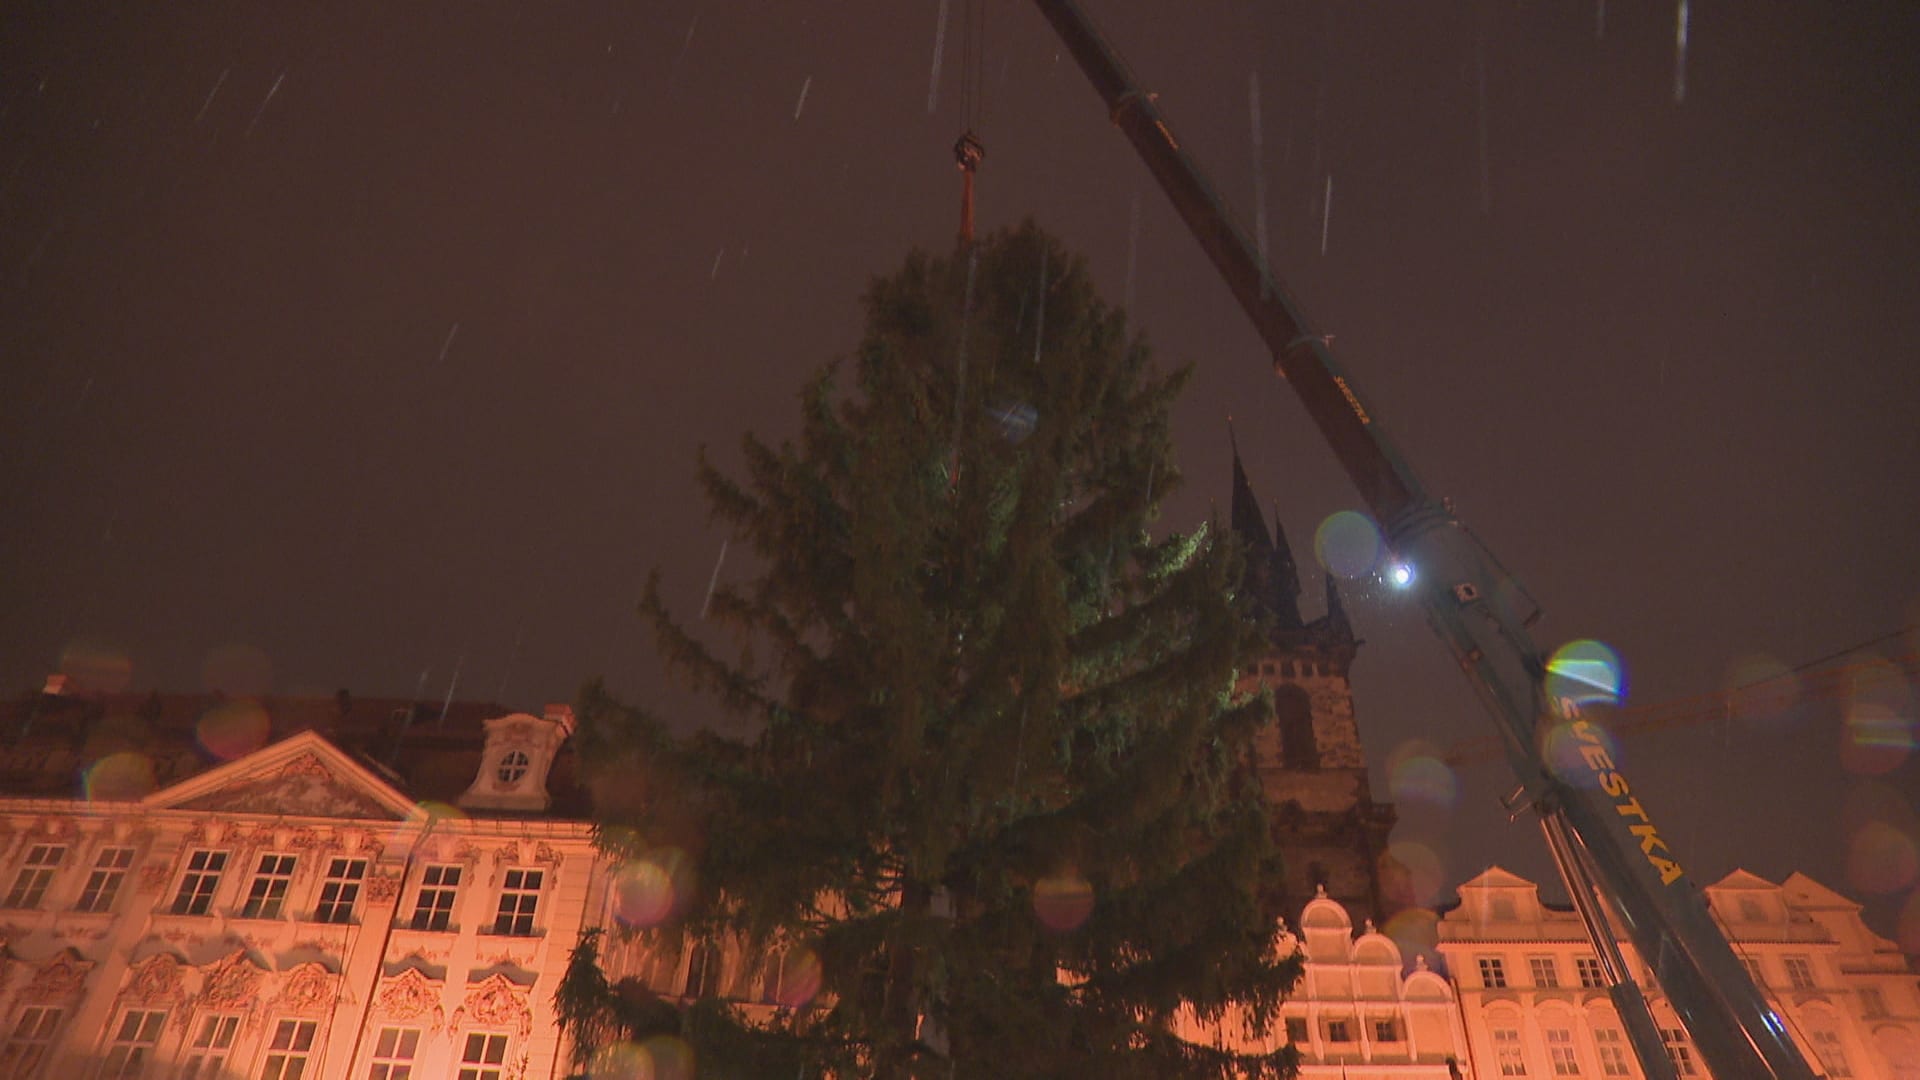 Na Staroměstském náměstí už stojí vánoční strom.